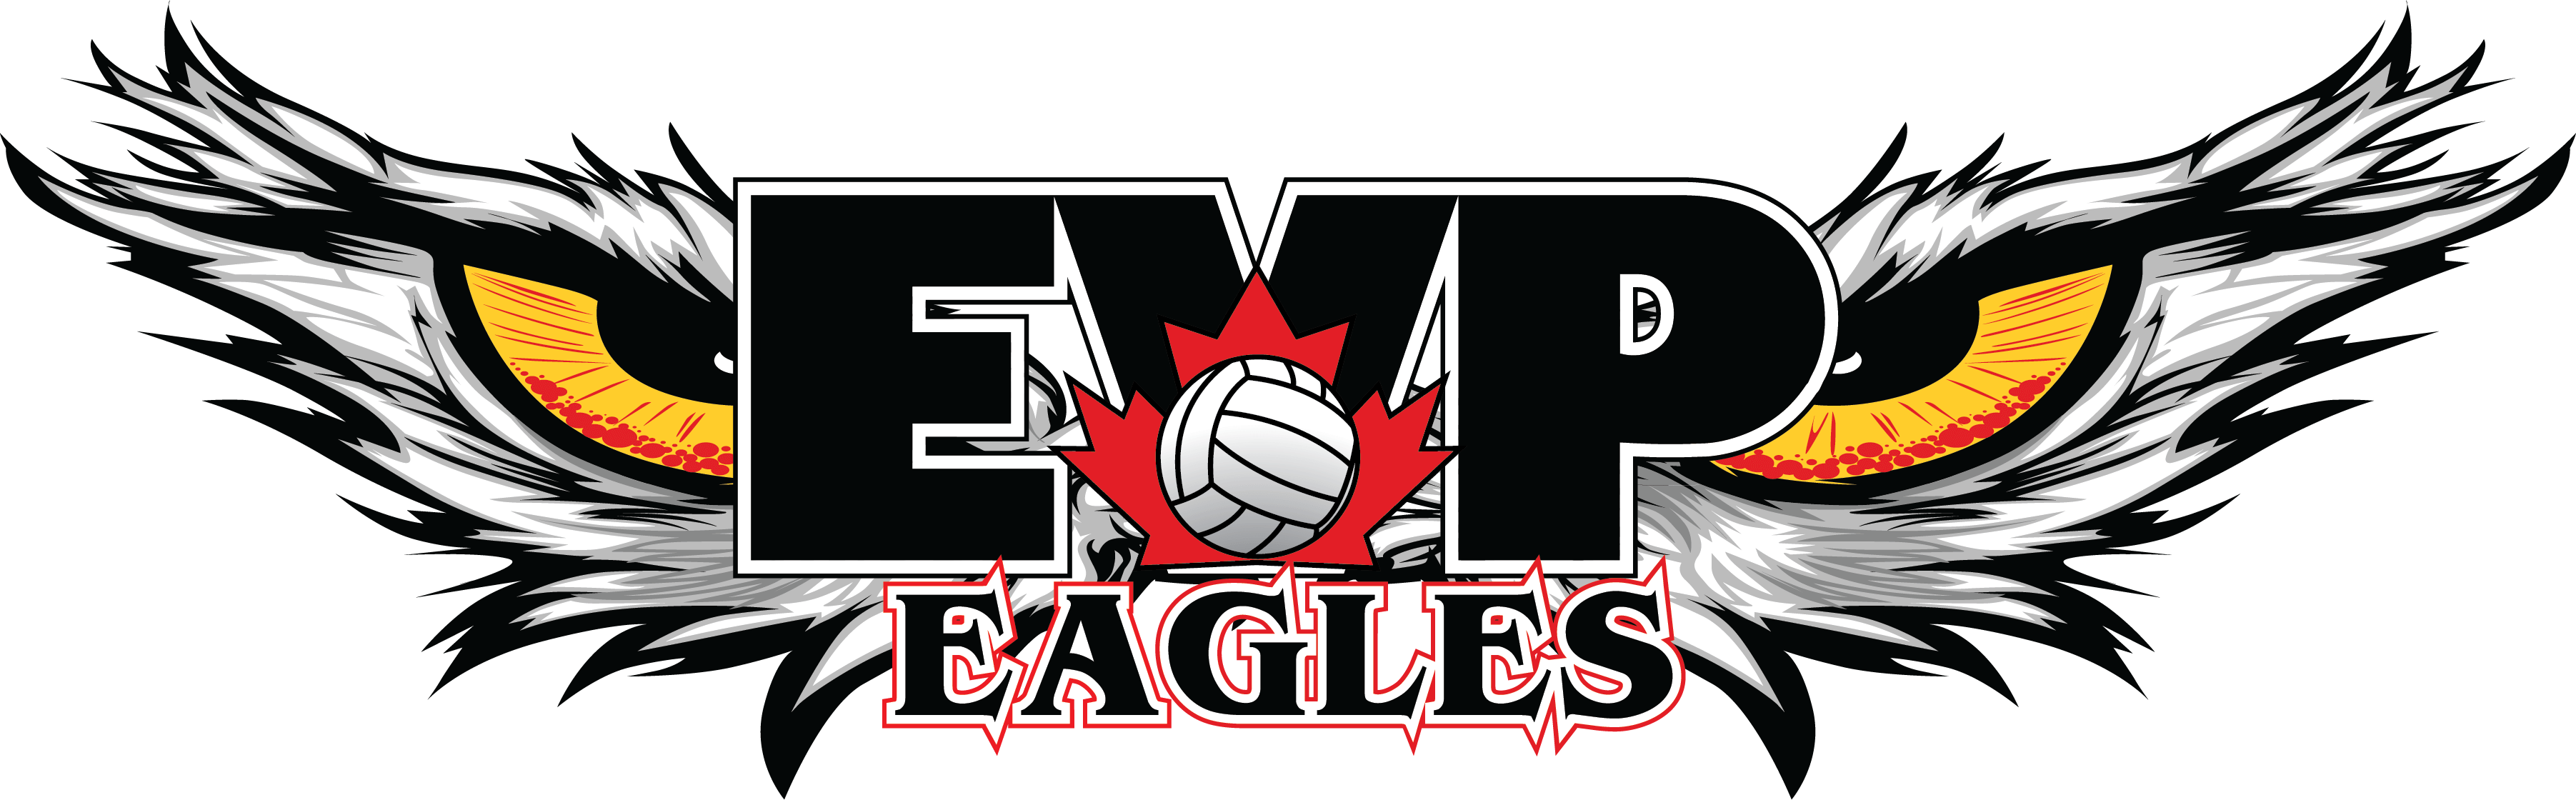 new-eagles-logo_full-colour